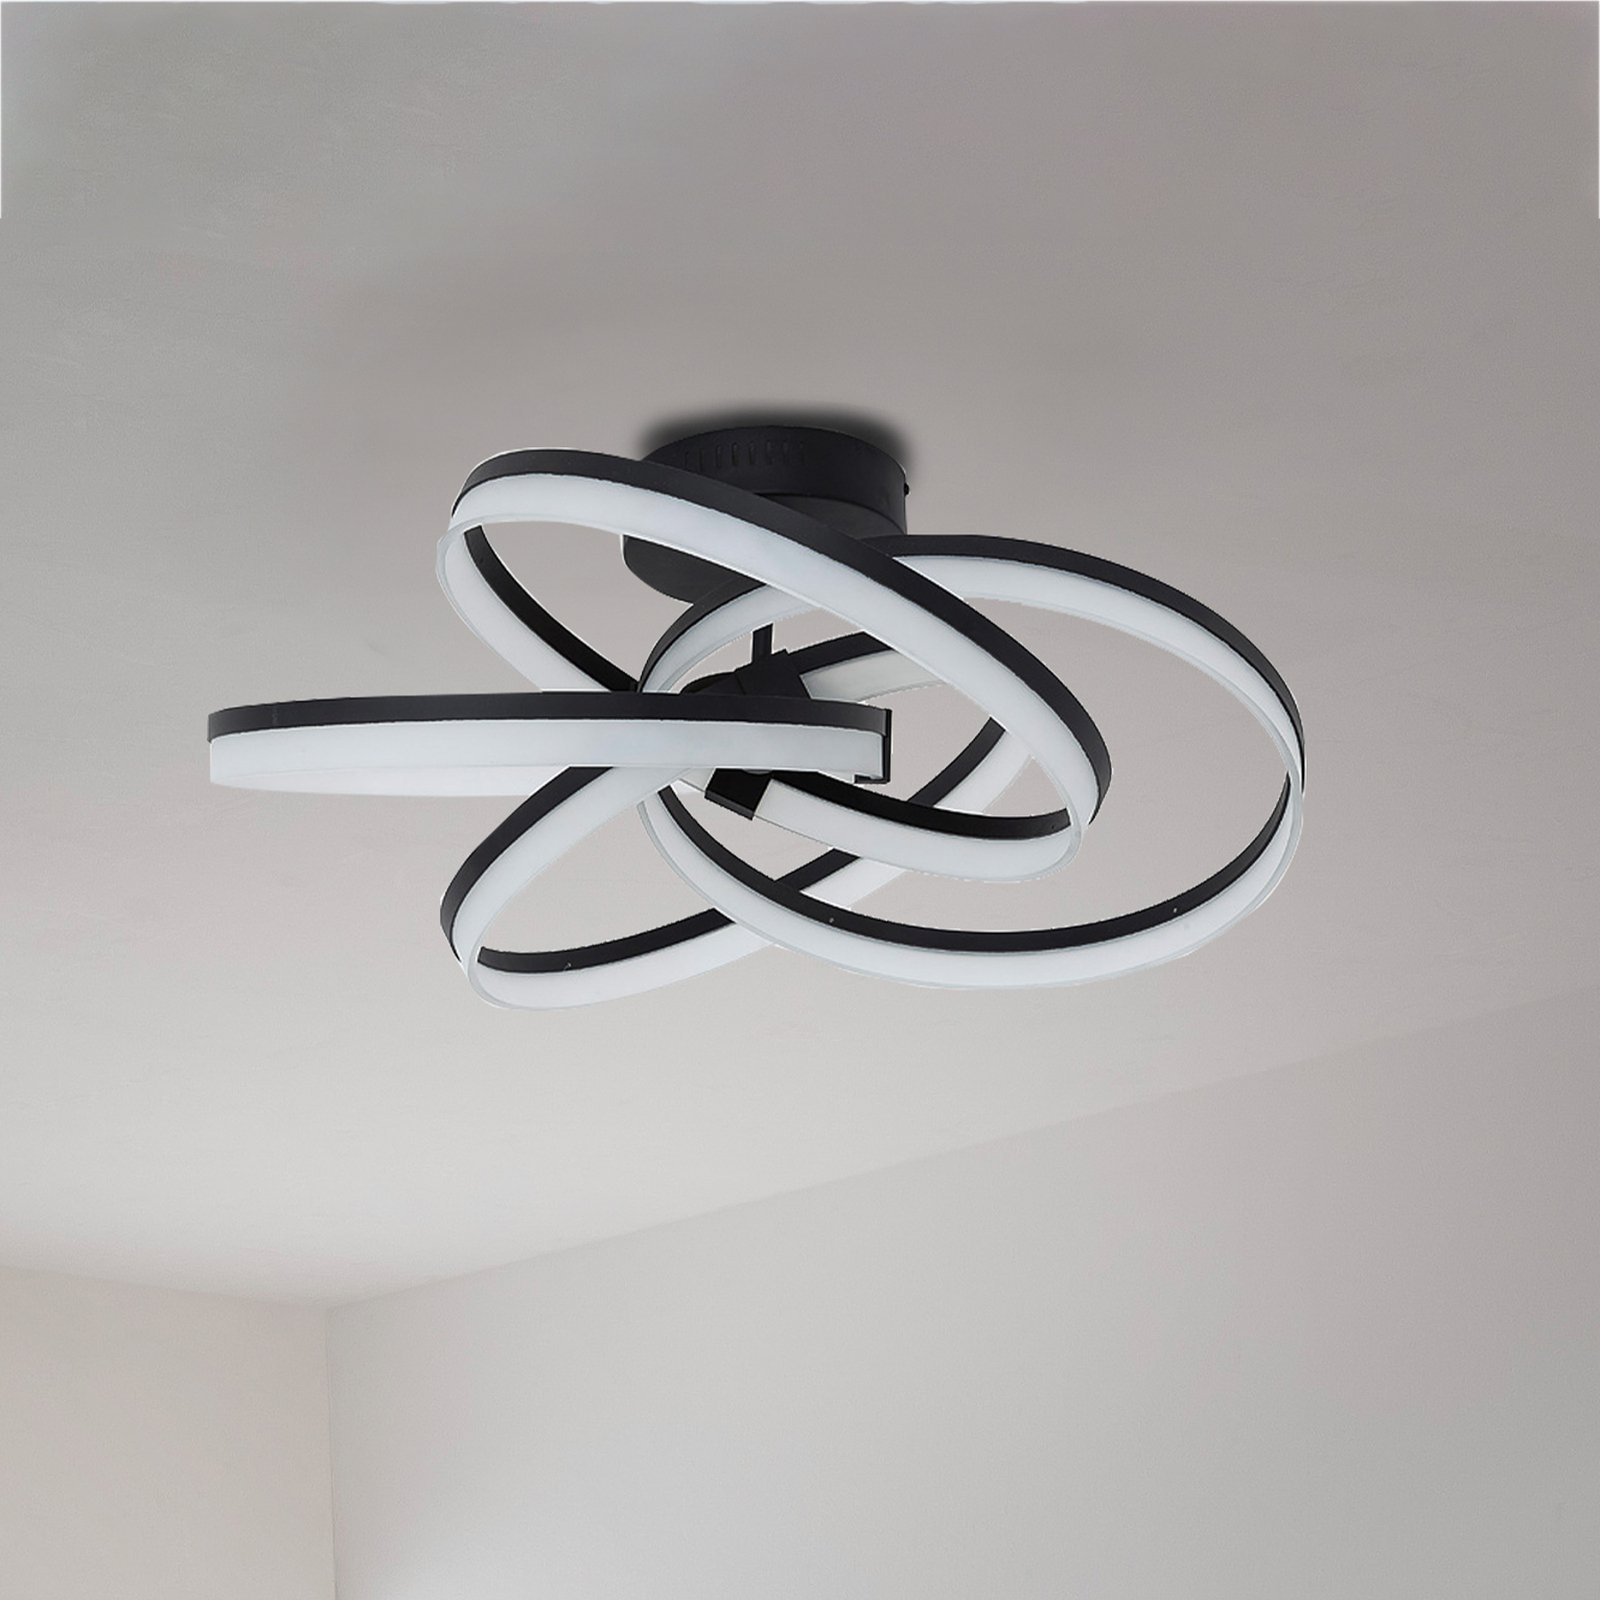 Schöner Wohnen Loop LED-taklampa CCT svart